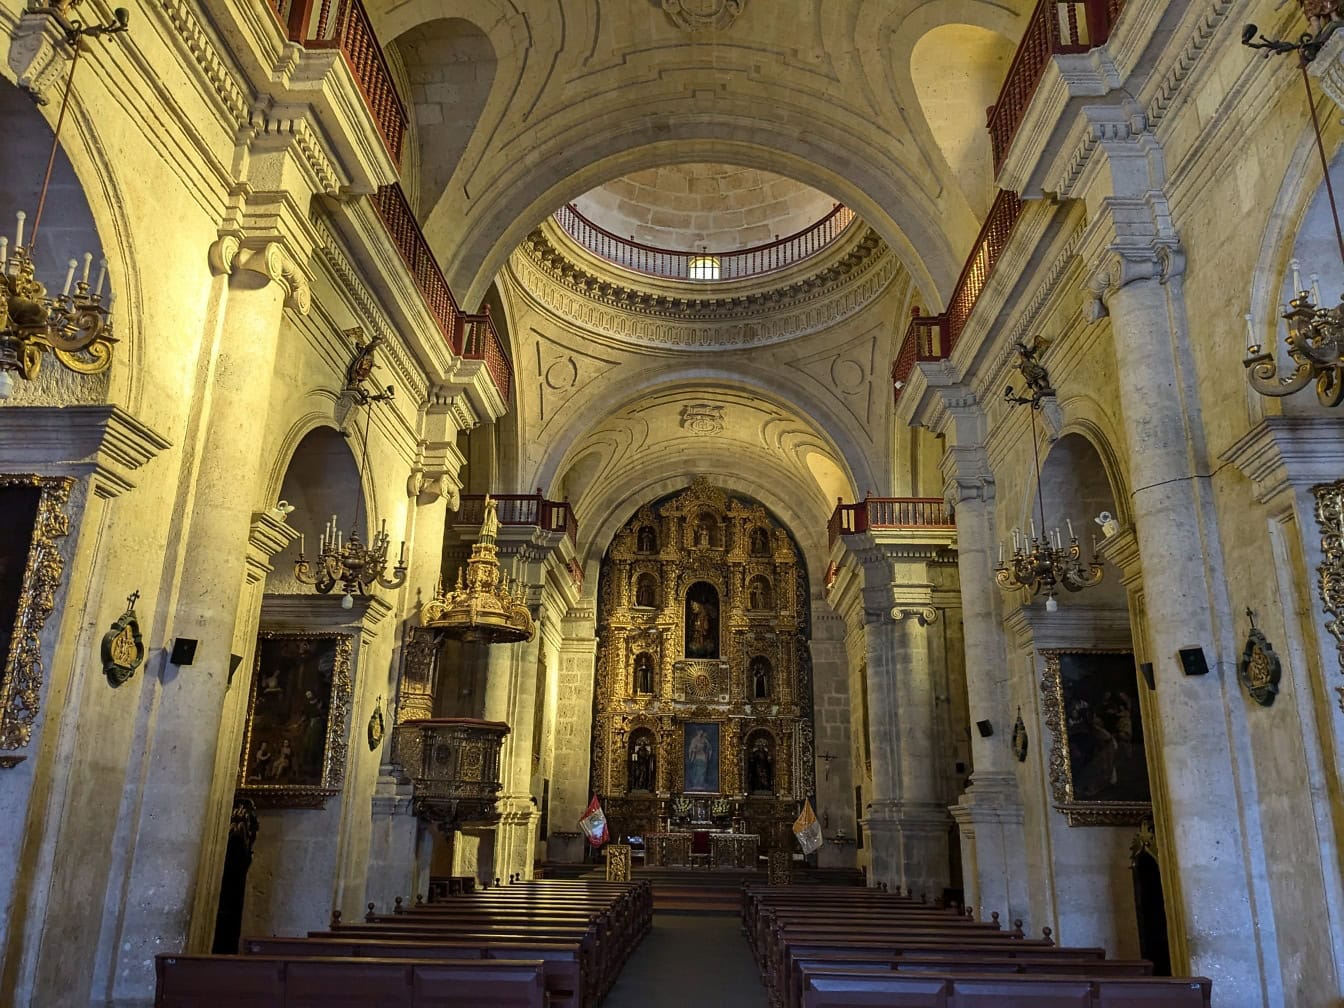 Barokkityylinen sisustus Arequipan Jeesuksen seuran katolisessa kirkossa Perussa, jossa on koristeellinen alttari